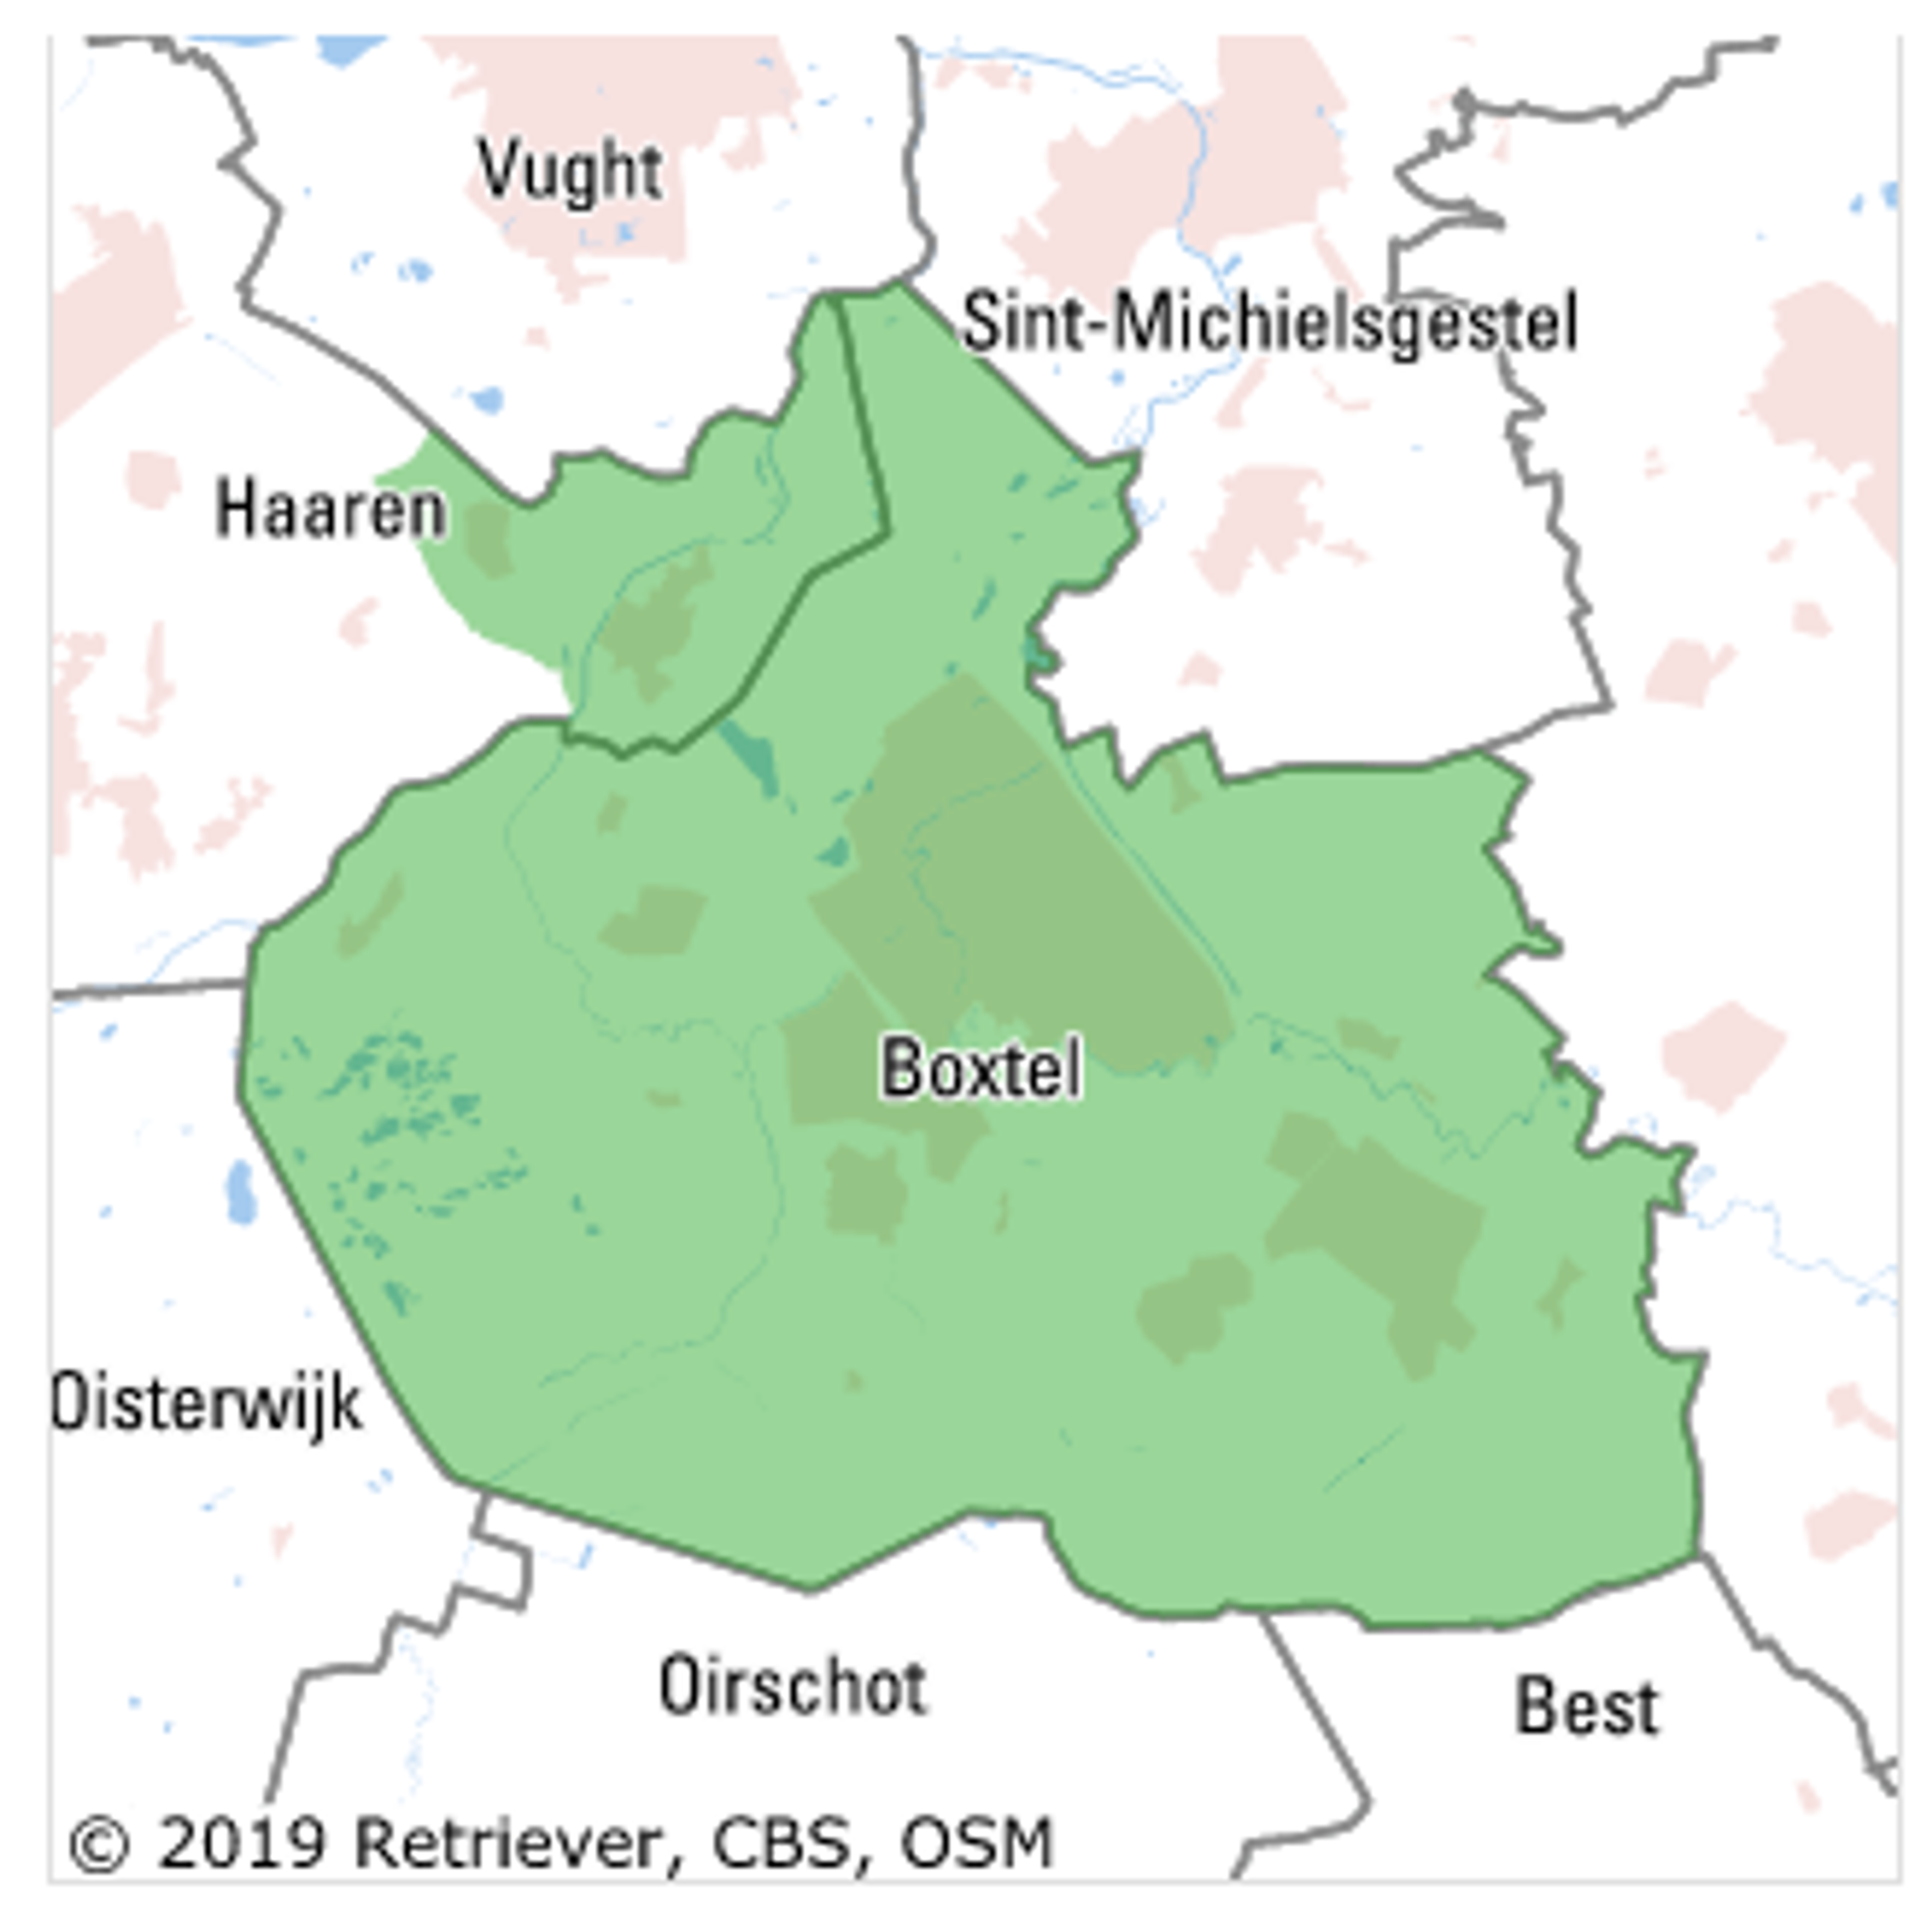 De Meierij Boxtel naar Stichting Brabants Centrum